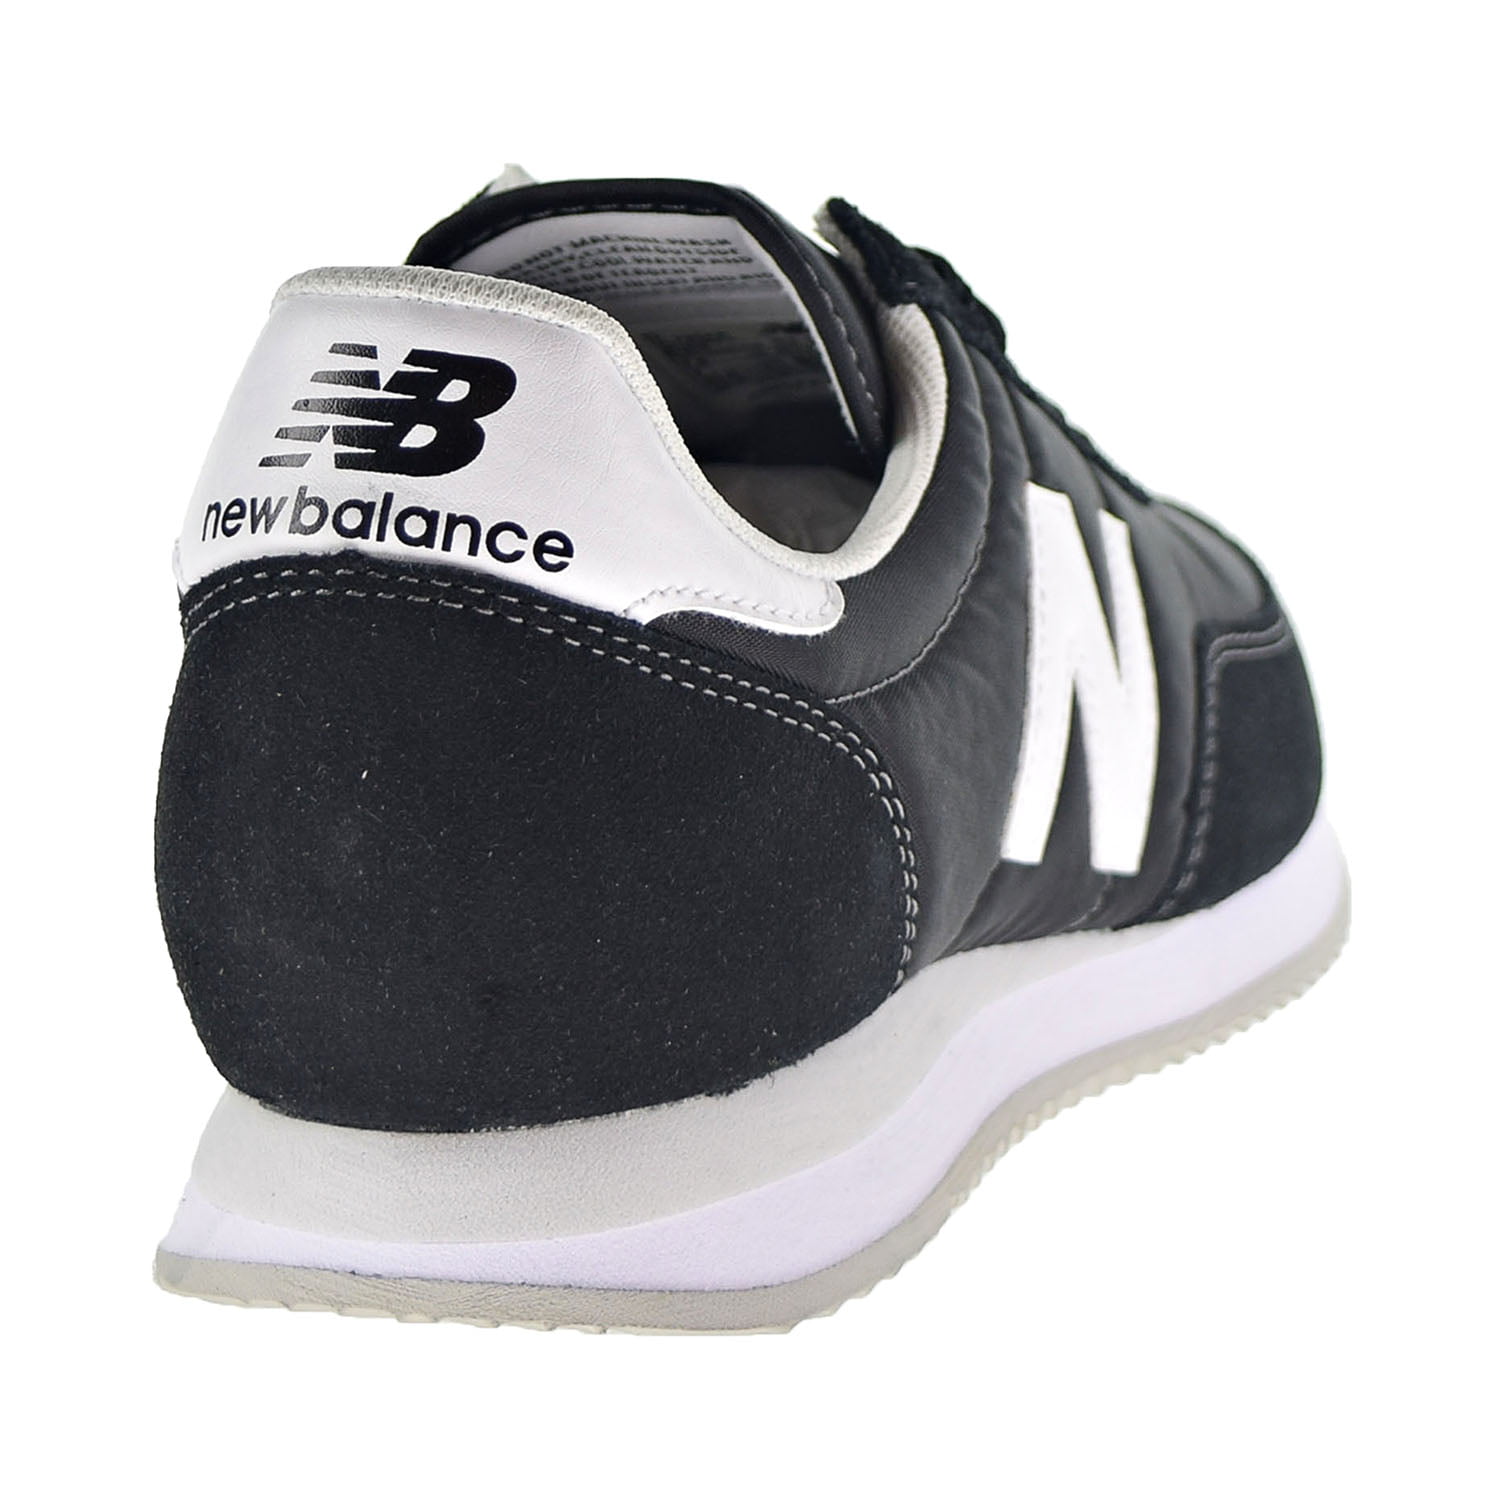 Perdido Elevado Apéndice New Balance Classics 720 V1 Men's Shoes Black/White ul720-aa - Walmart.com